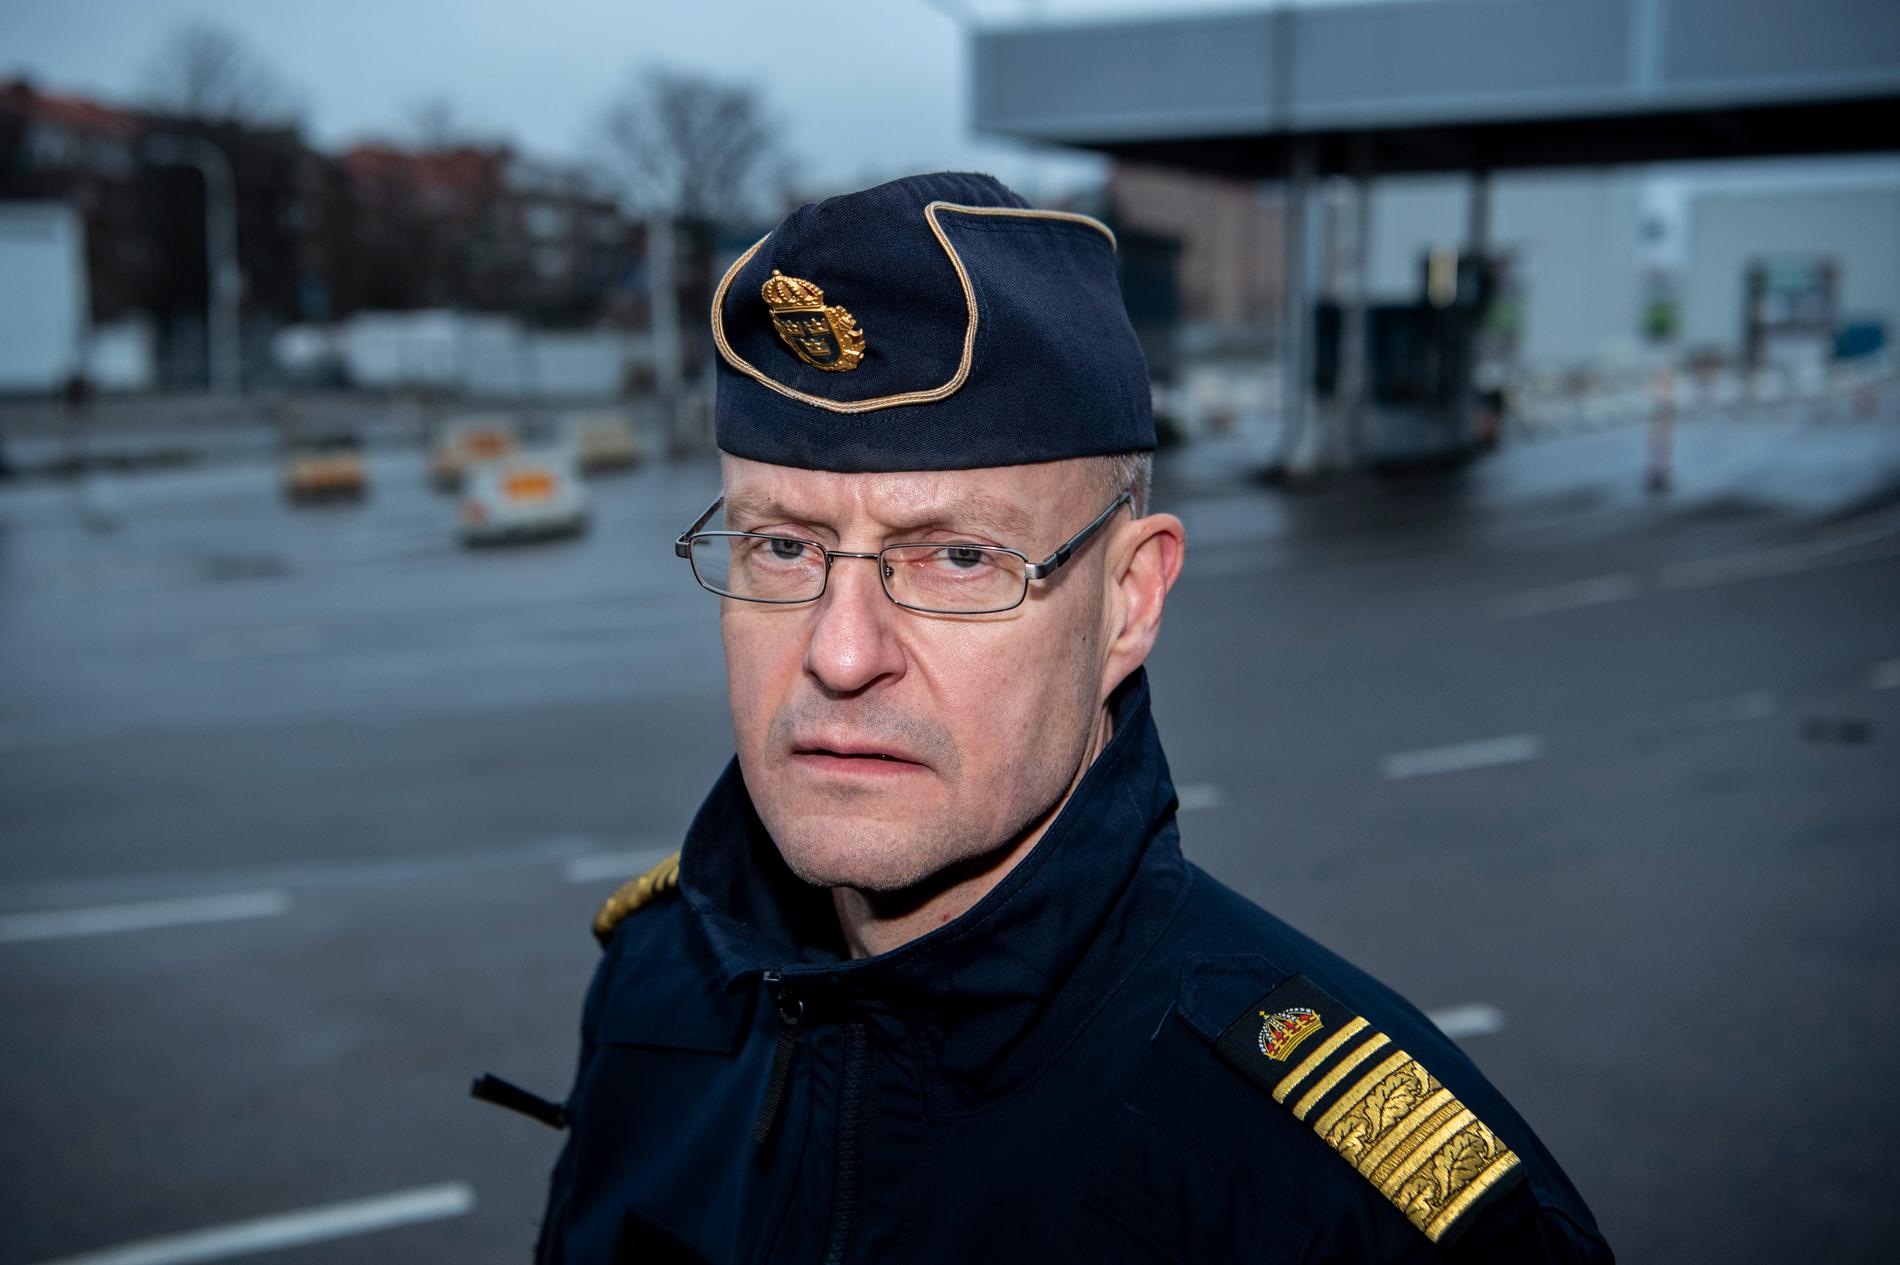 "Här bygger vi väldigt mycket kunskap, underrättelse, för att vi ska kunna stoppa de här människorna från att ens komma in i Sverige. Det är vårt mål", säger Mats Löfving, chef för polisens Nationella operativa avdelning.